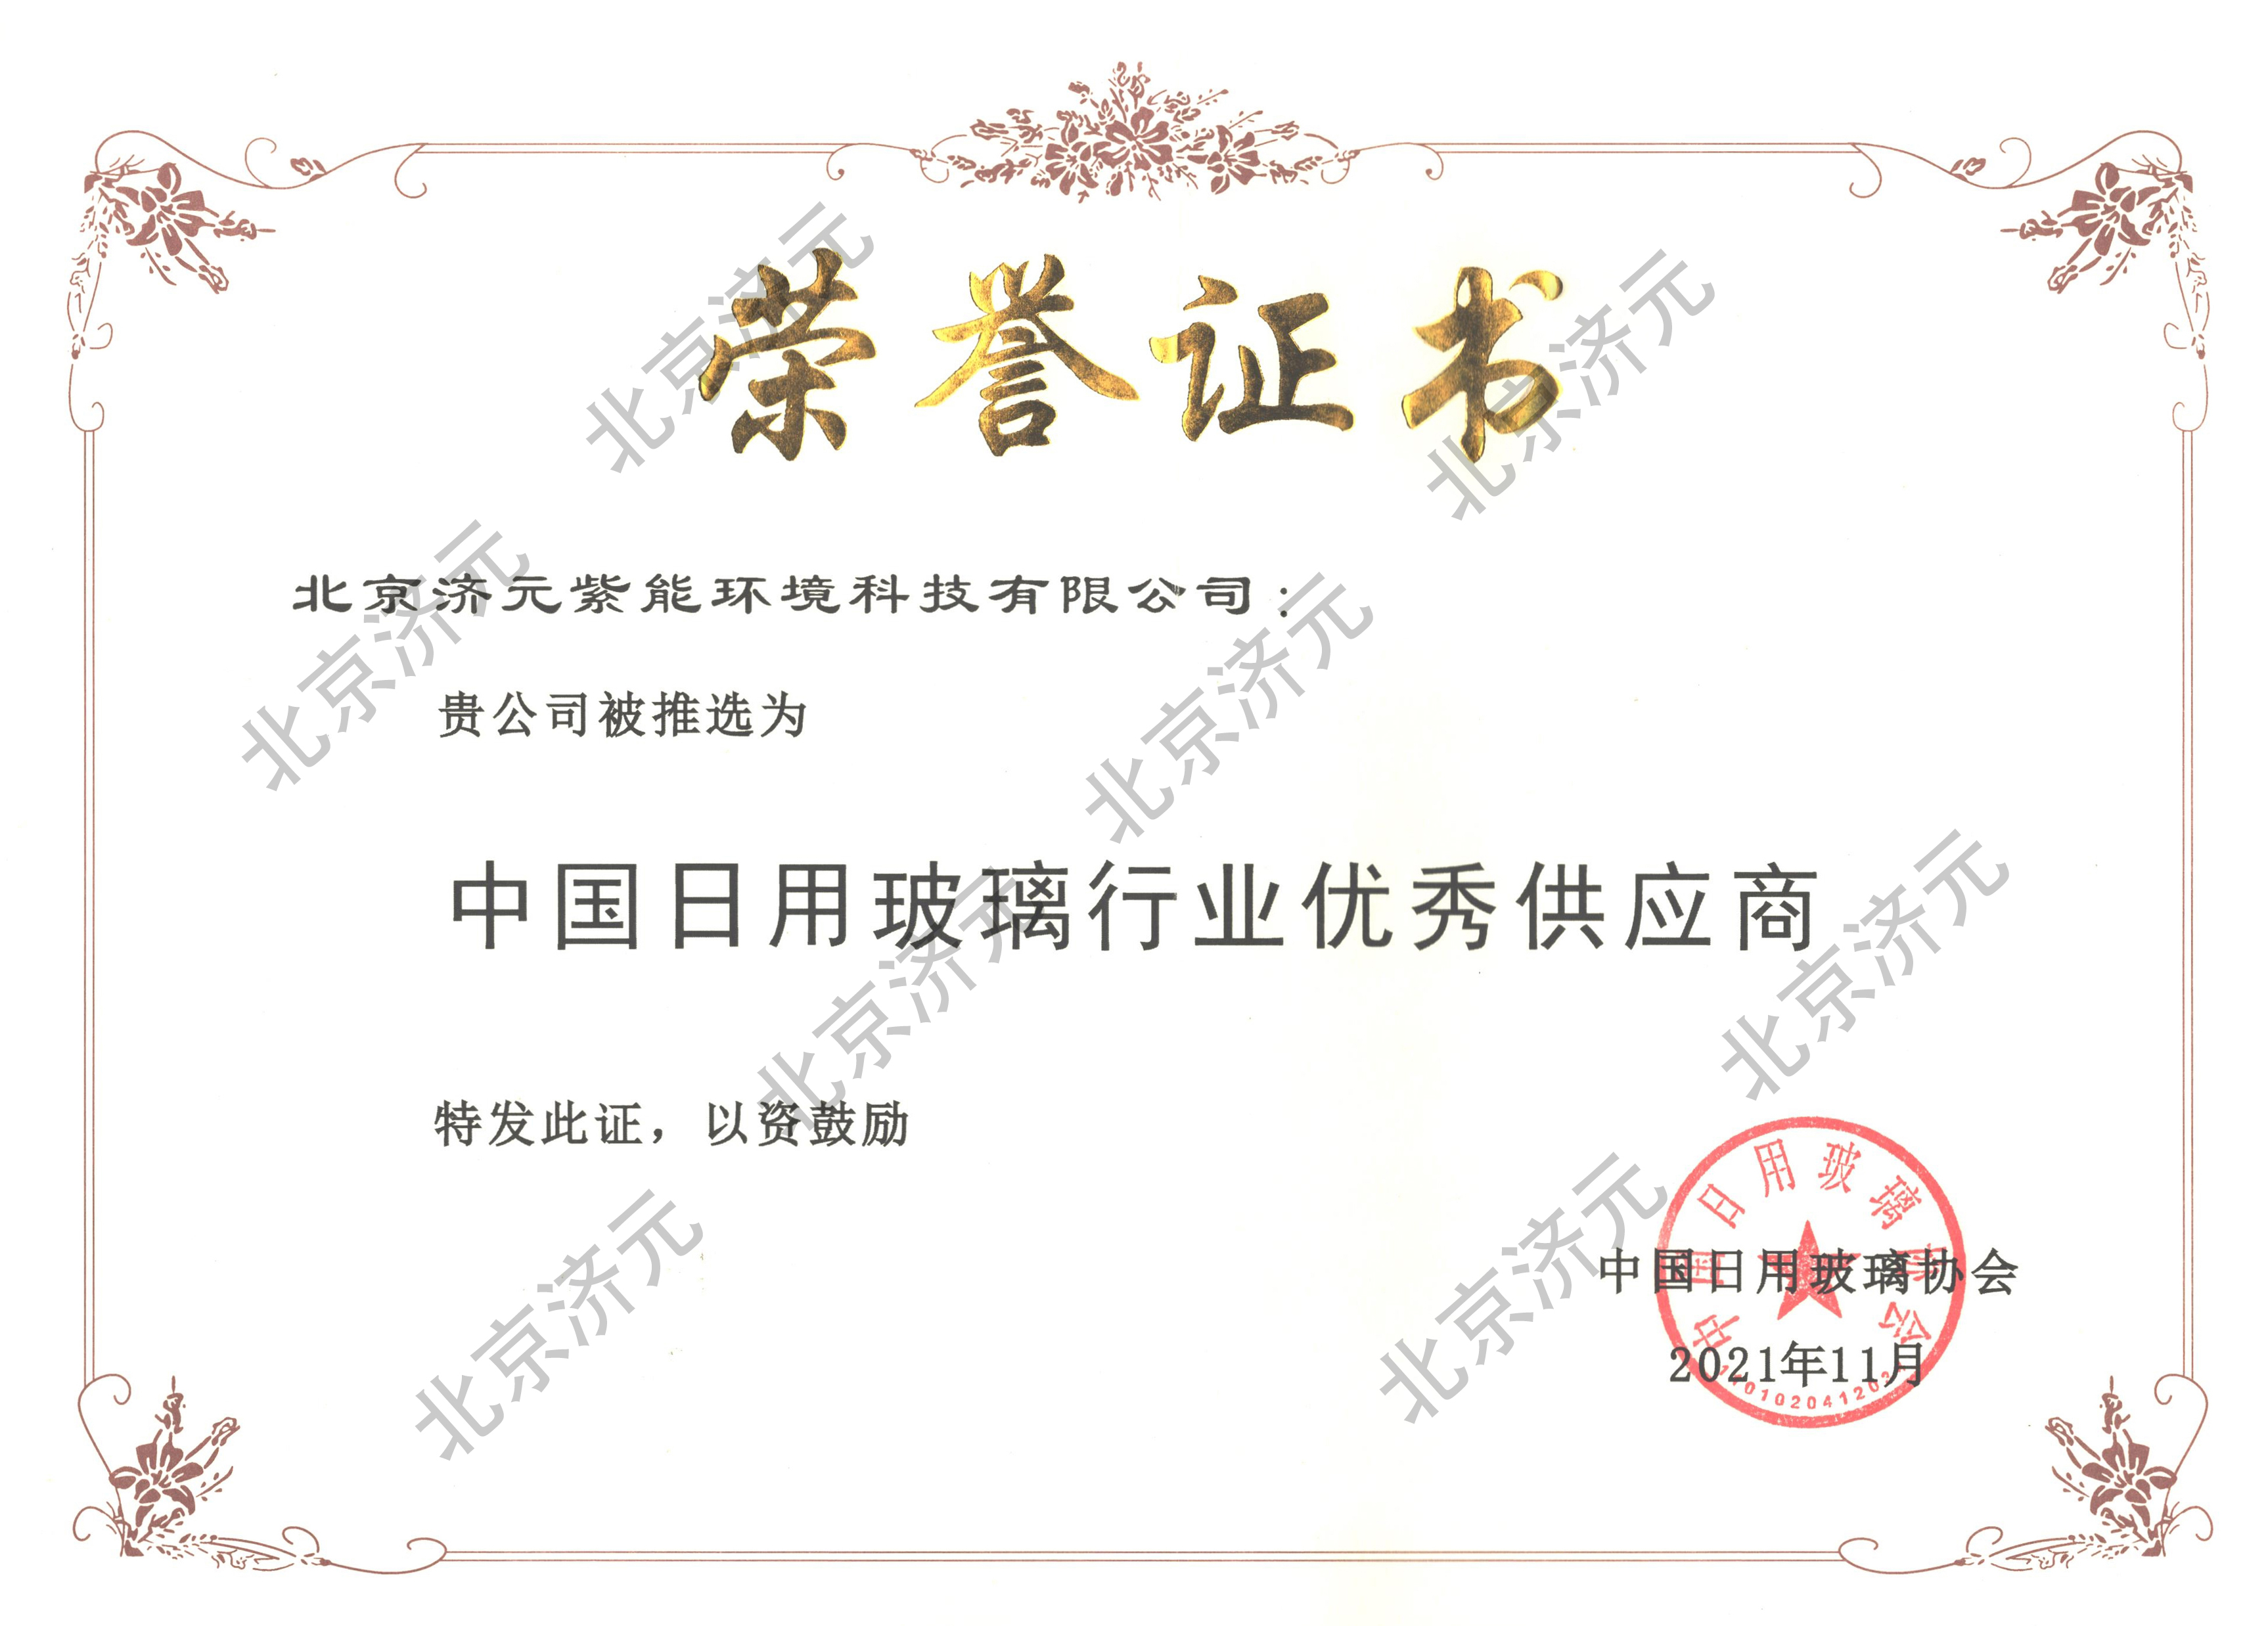 中国日用玻璃行业优秀供应商荣誉证书